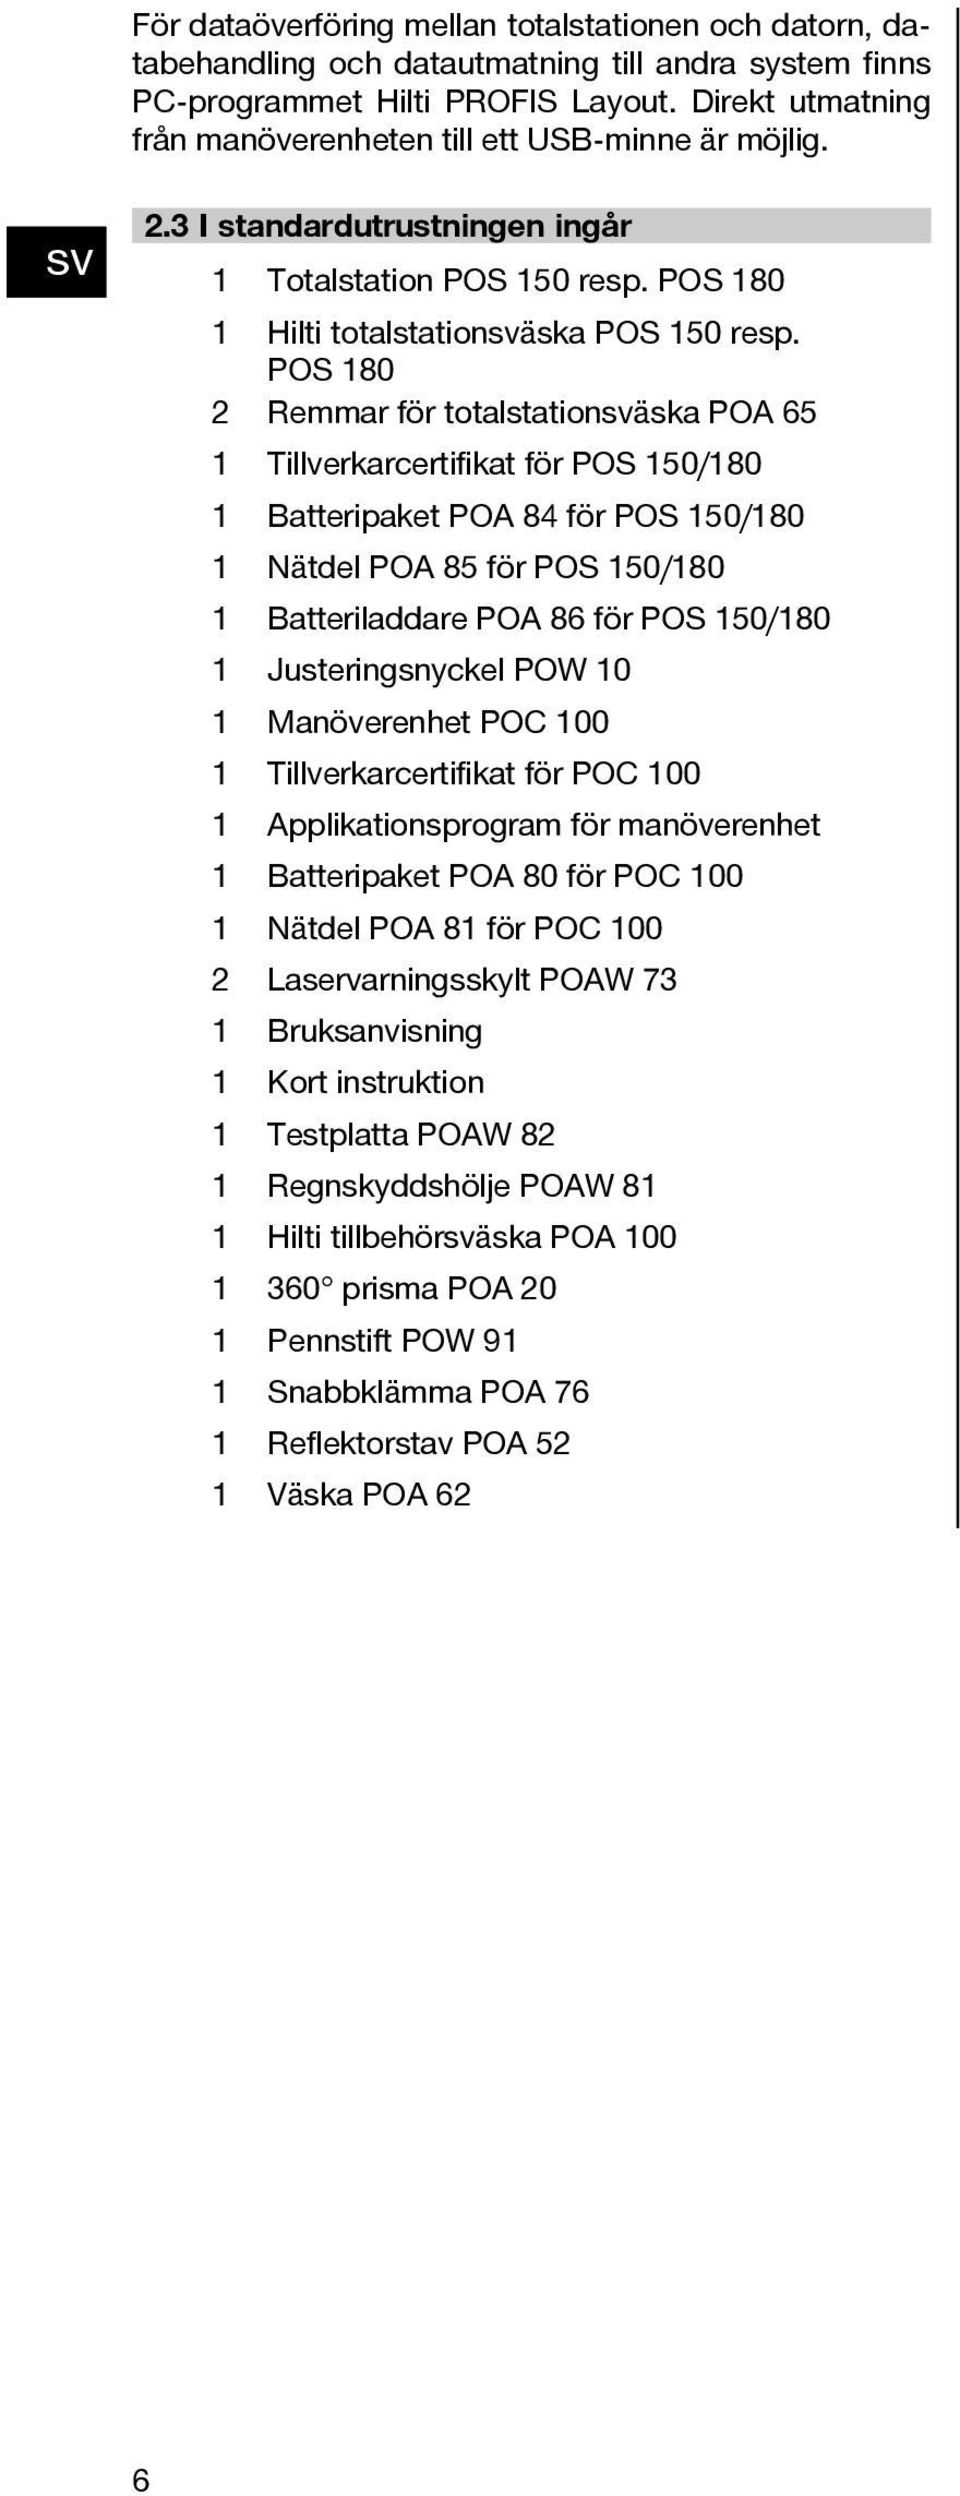 POS 180 2 Remmar för totalstationäska POA 65 1 Tillverkarcertifikat för POS 150/180 1 Batteripaket POA 84 för POS 150/180 1 Nätdel POA 85 för POS 150/180 1 Batteriladdare POA 86 för POS 150/180 1